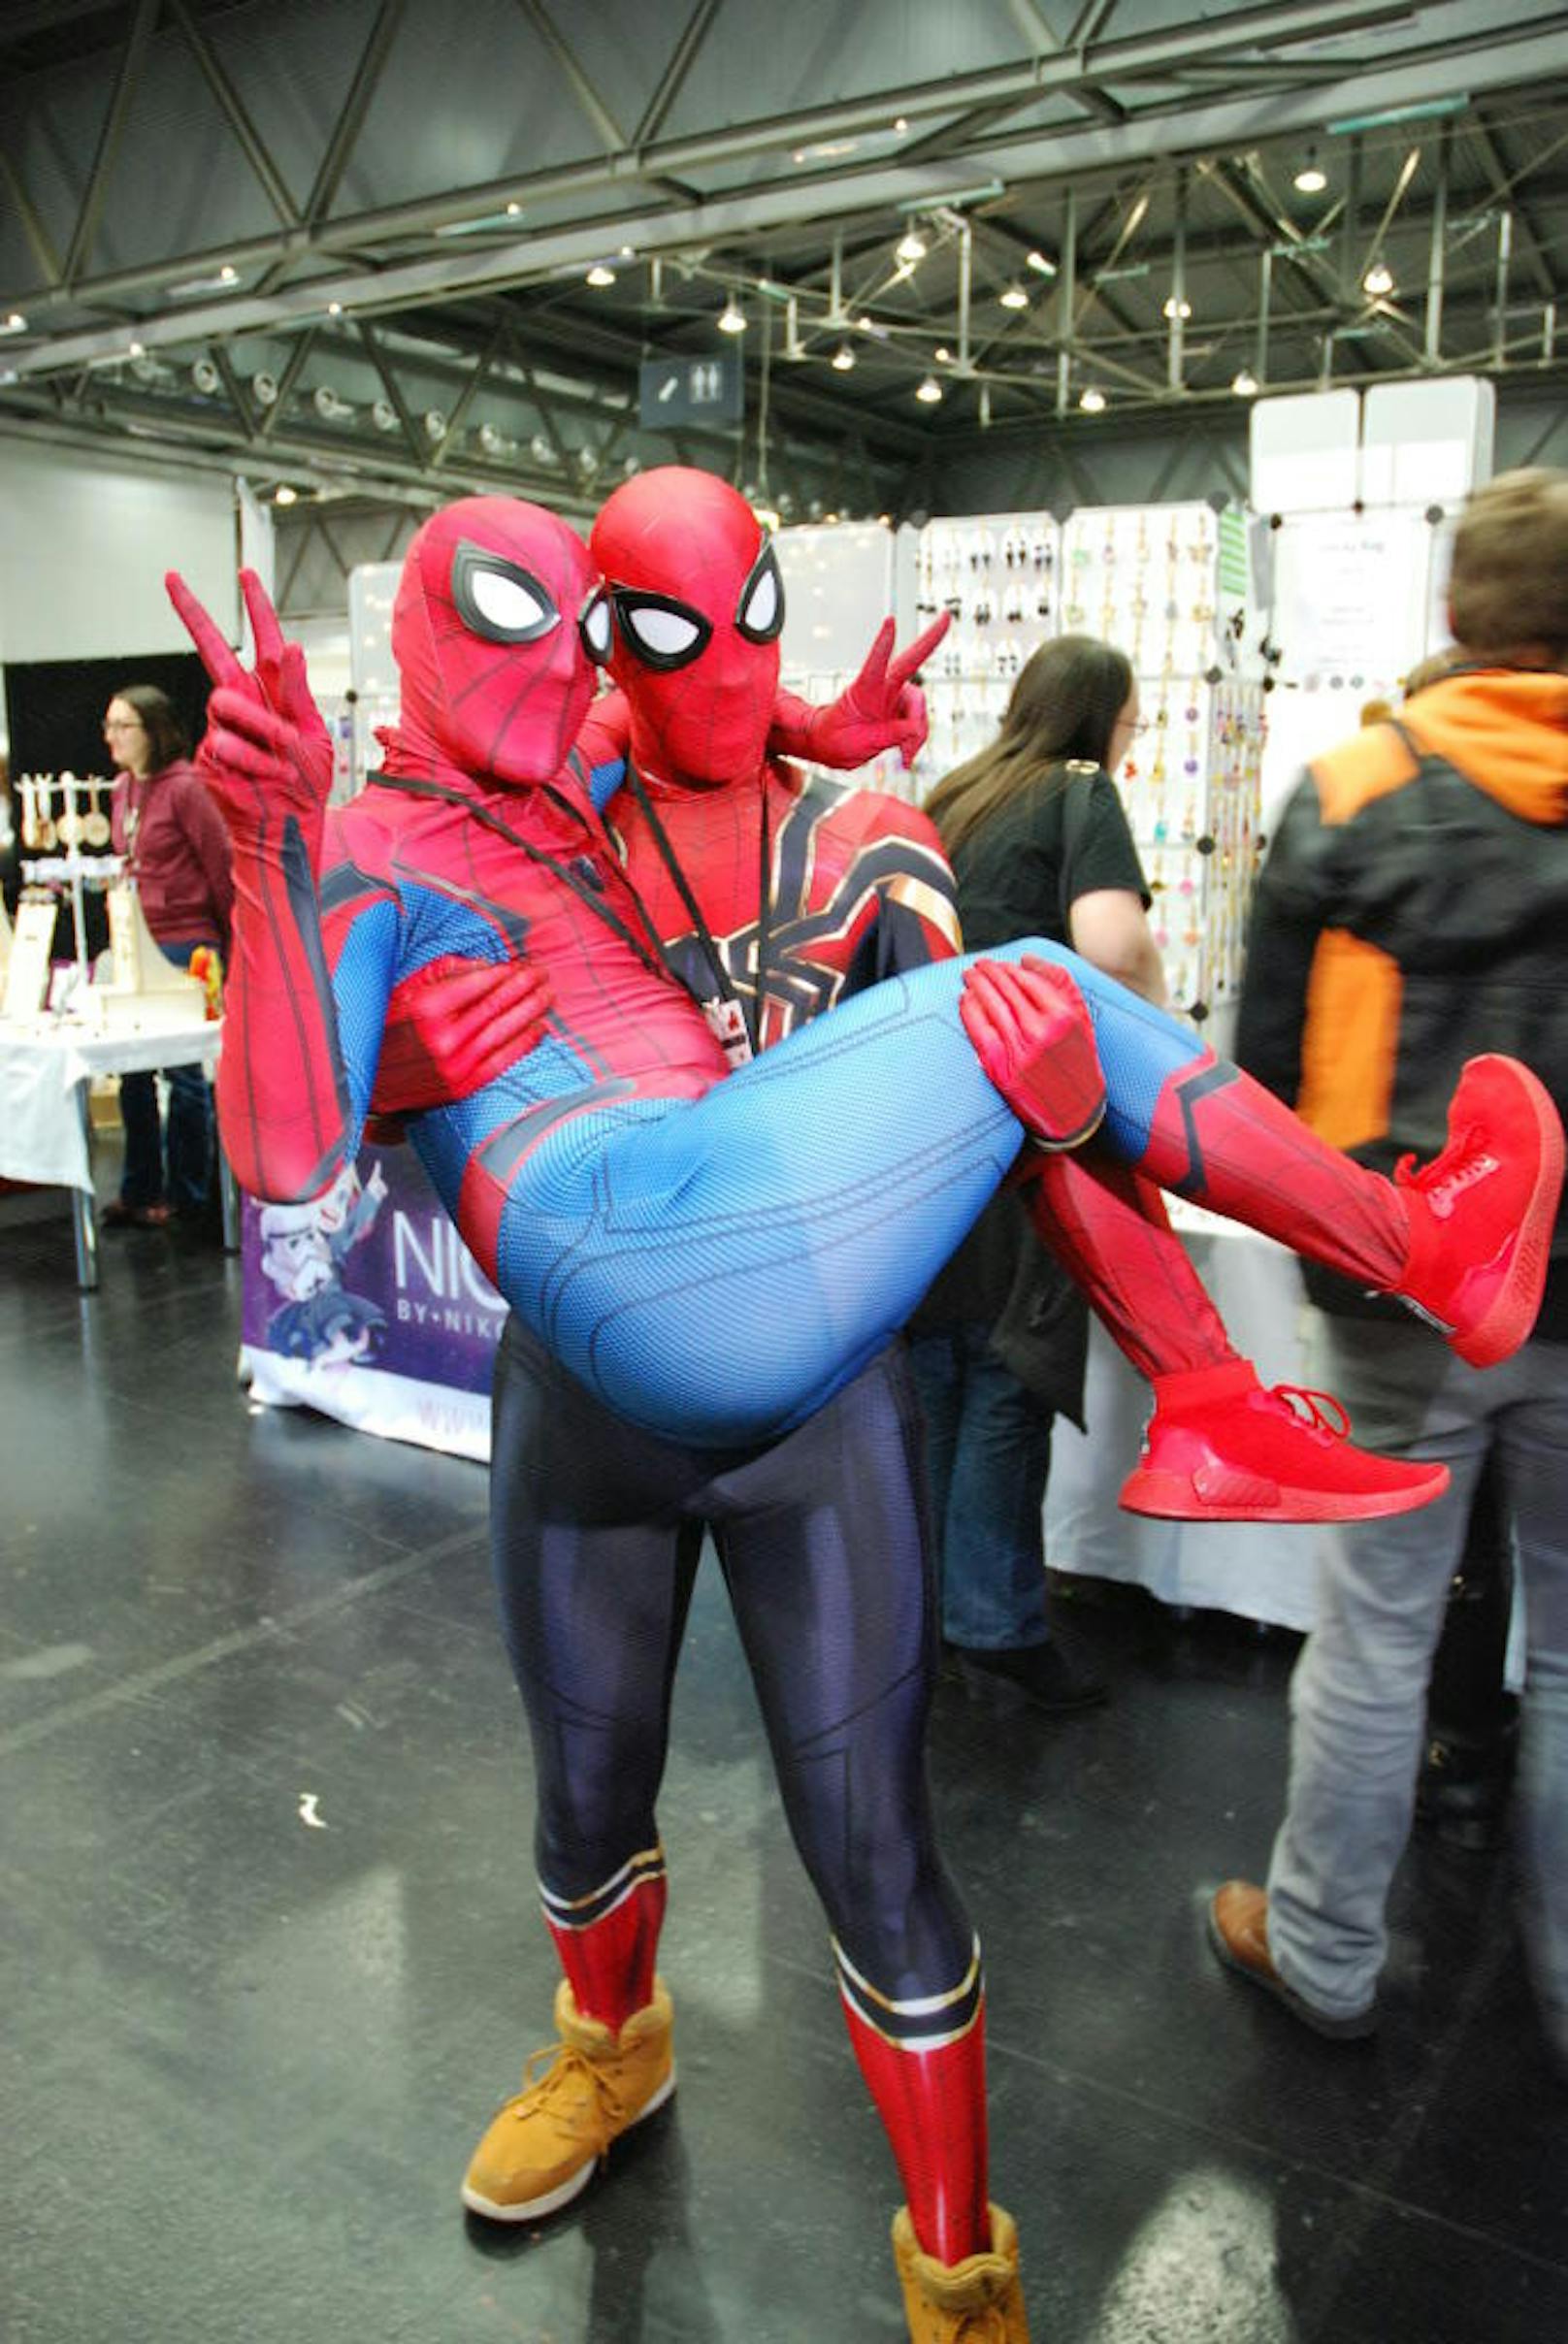 Eine wahre Bromance ist, wenn man seinem Freund nicht nur sein altes Spider-Man-Kostüm borgt, sondern ihn auch auf Händen trägt. Das macht diese beiden Steirer sympathisch!